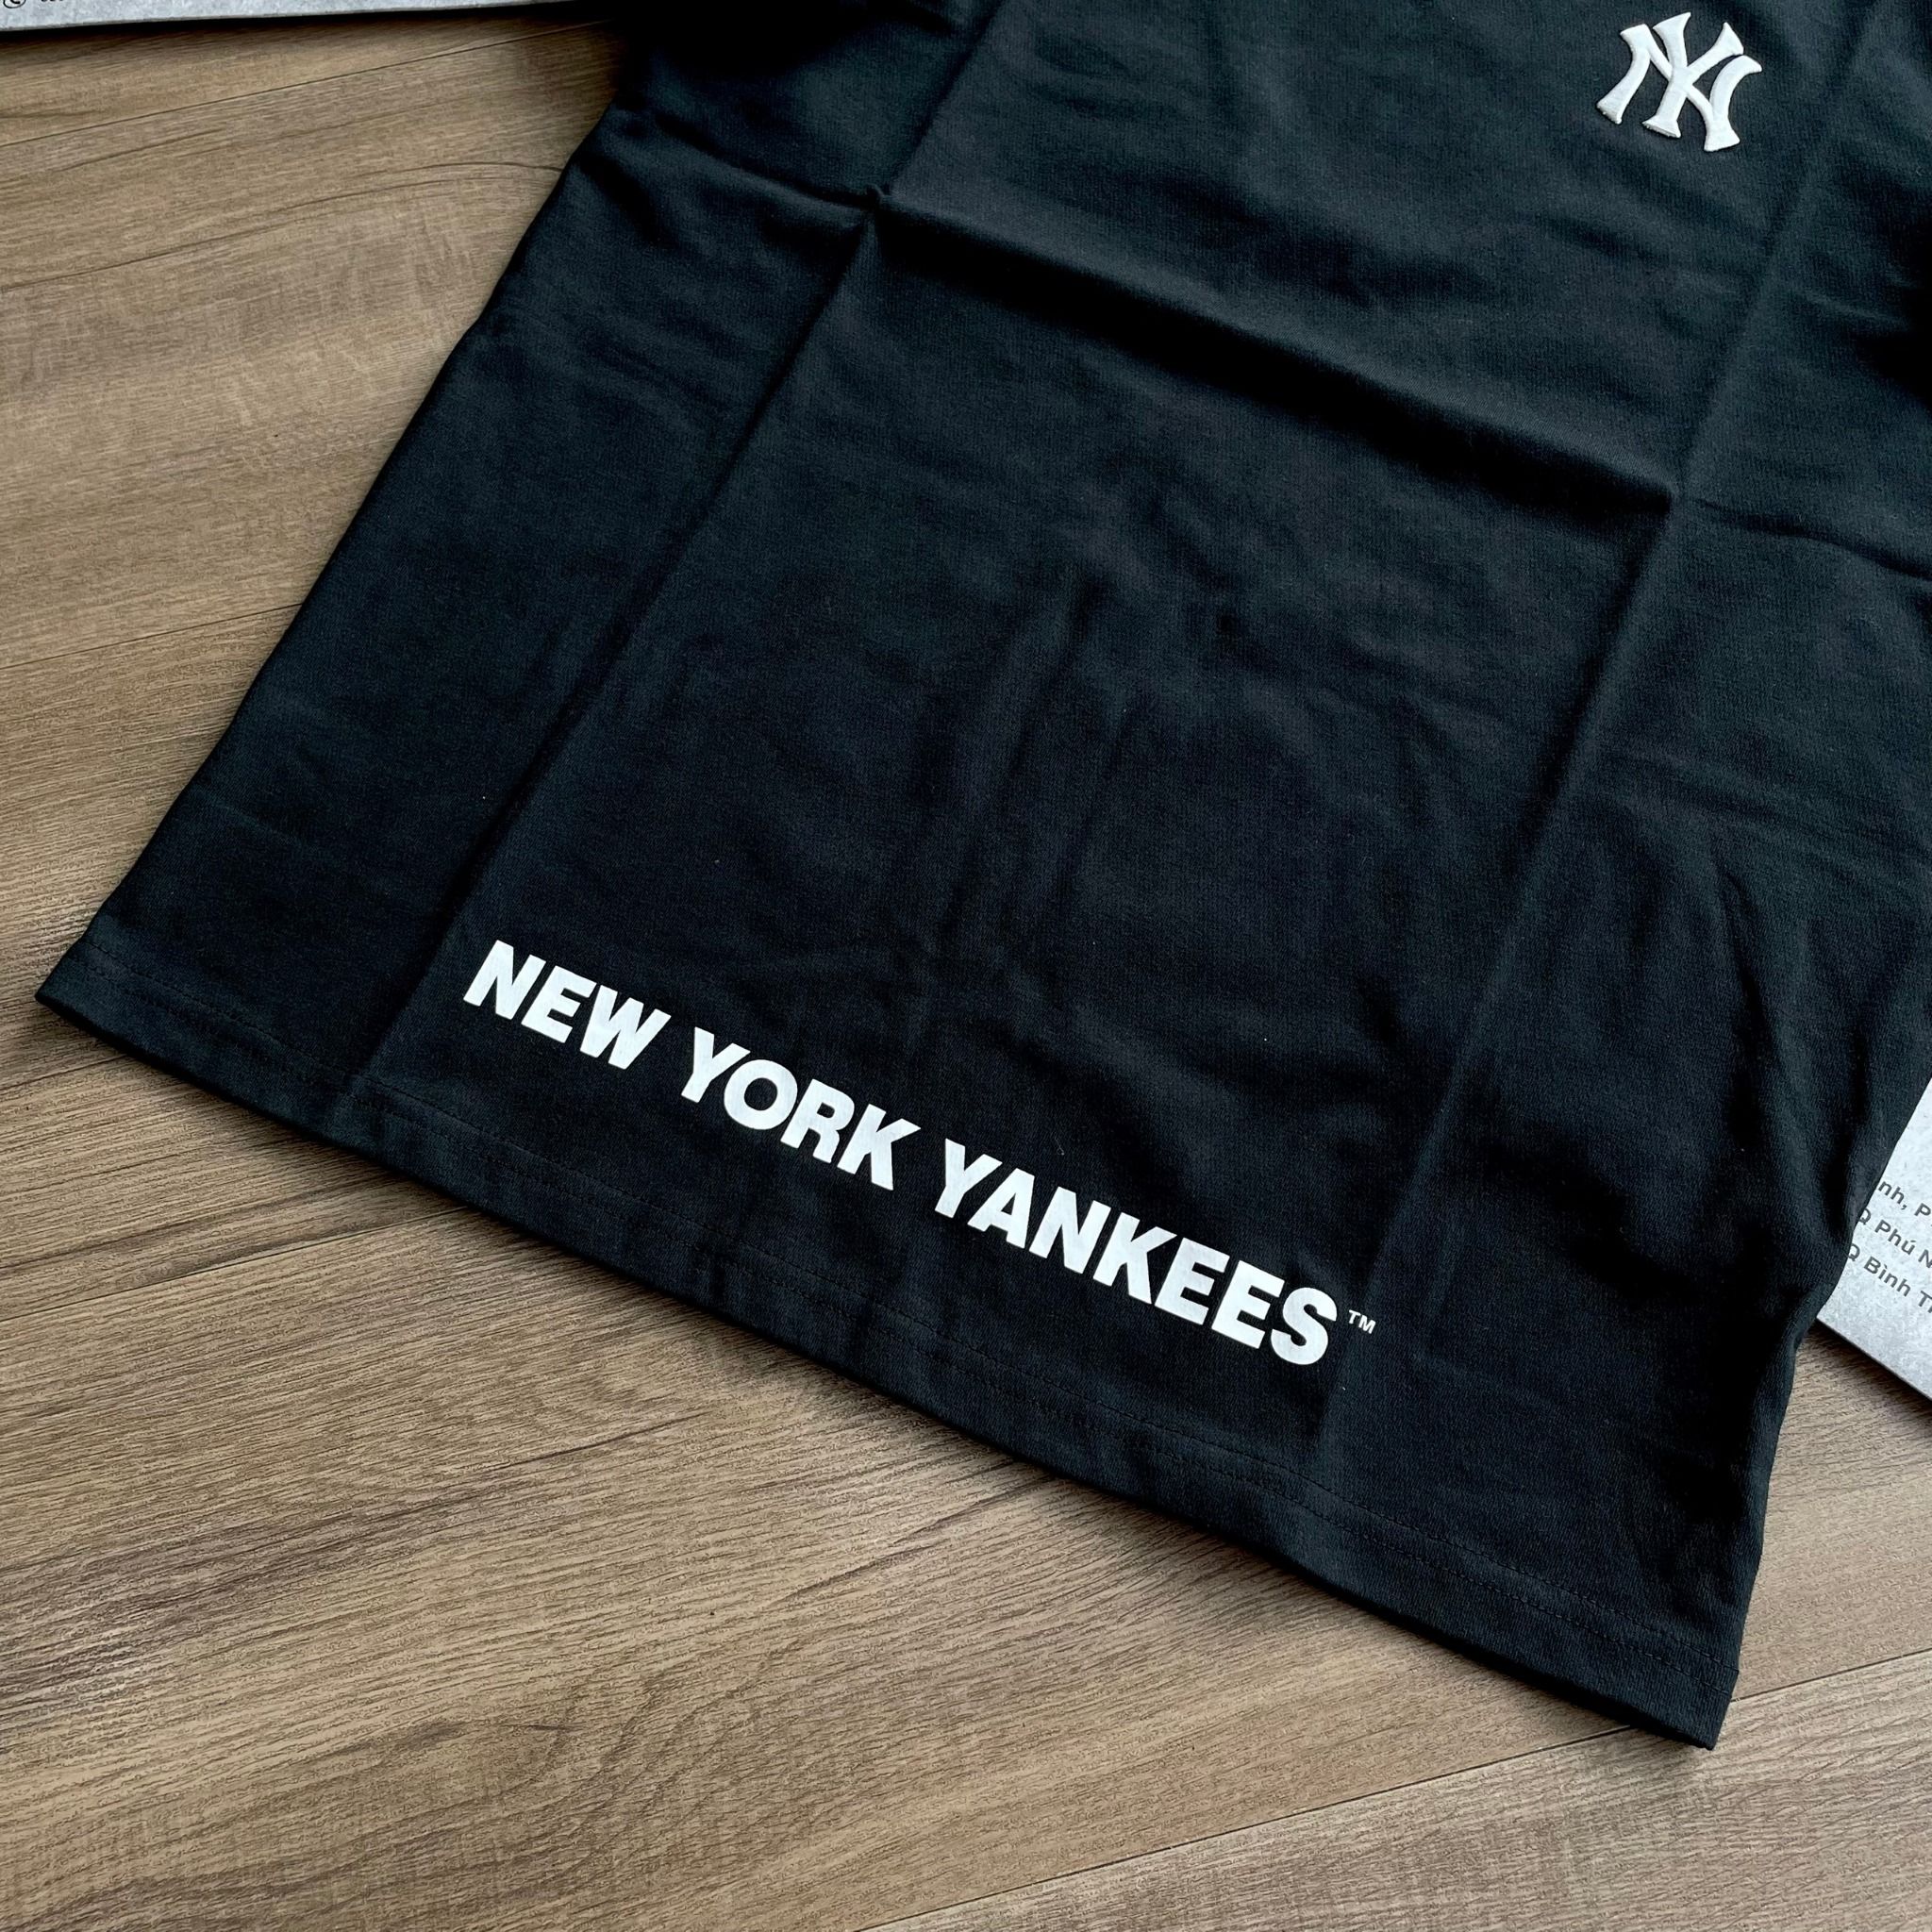  2222 - HÀNG CHÍNH HÃNG - ÁO NEW ERA - (689) + (764)  NY Yankees *Chạy Ngang* - Đen 